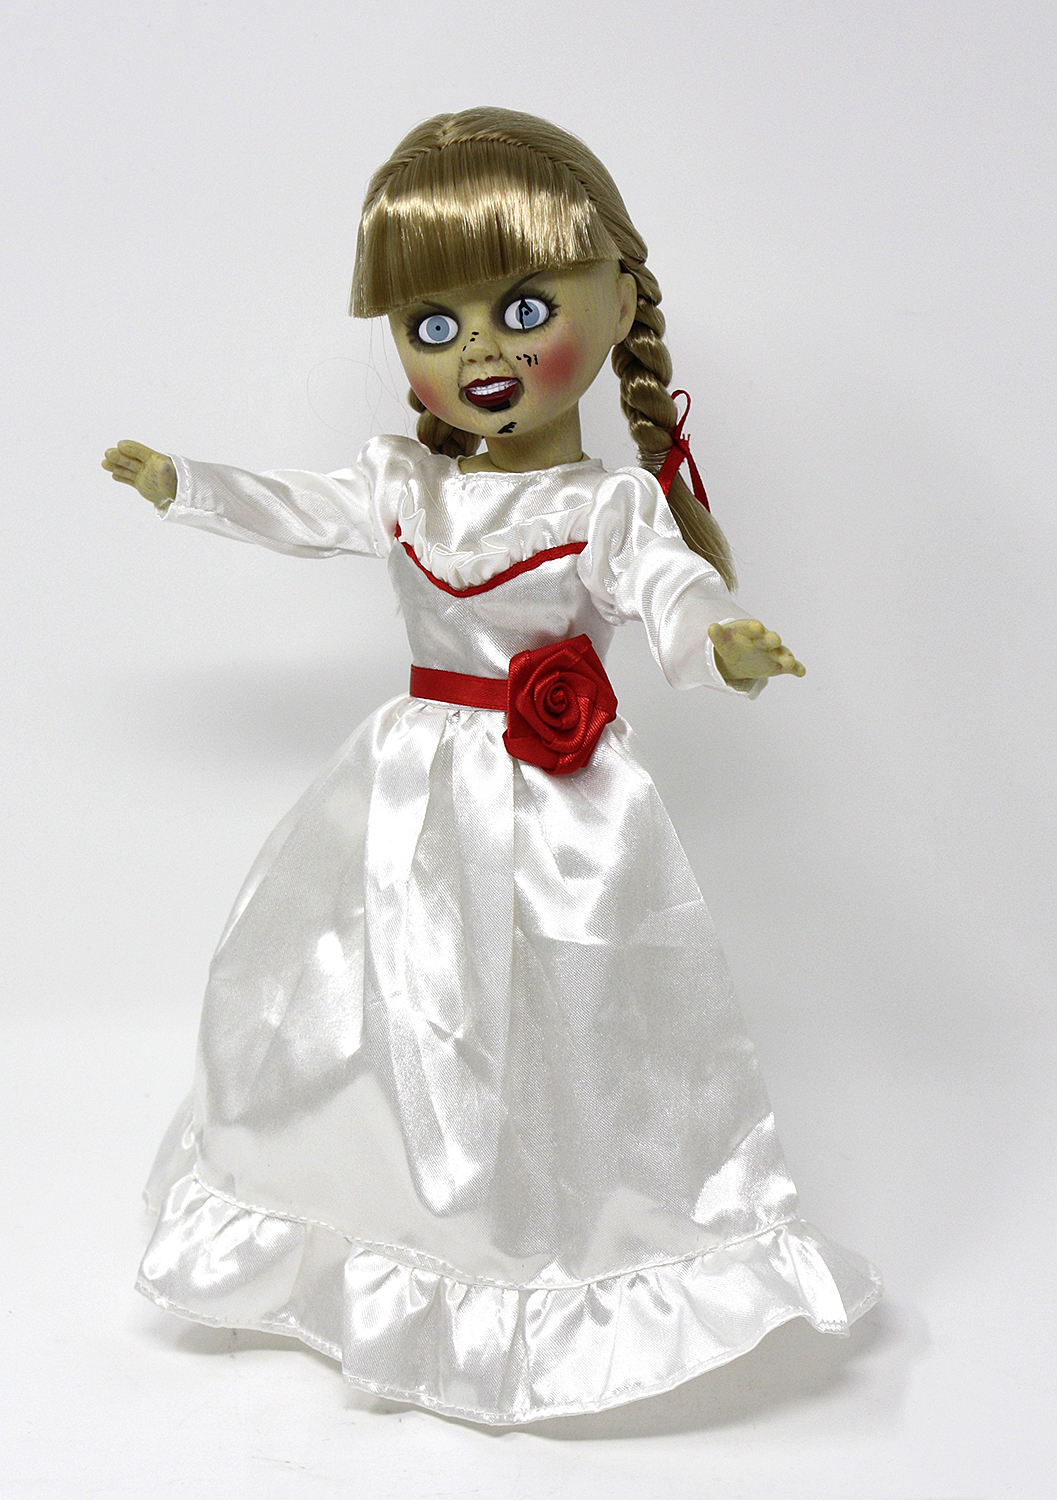 The Conjuring Annabelle Puppe Echt Mezco Toyz Living Dead Dolls Geschenke Film Tv Videospiele Spielzeug